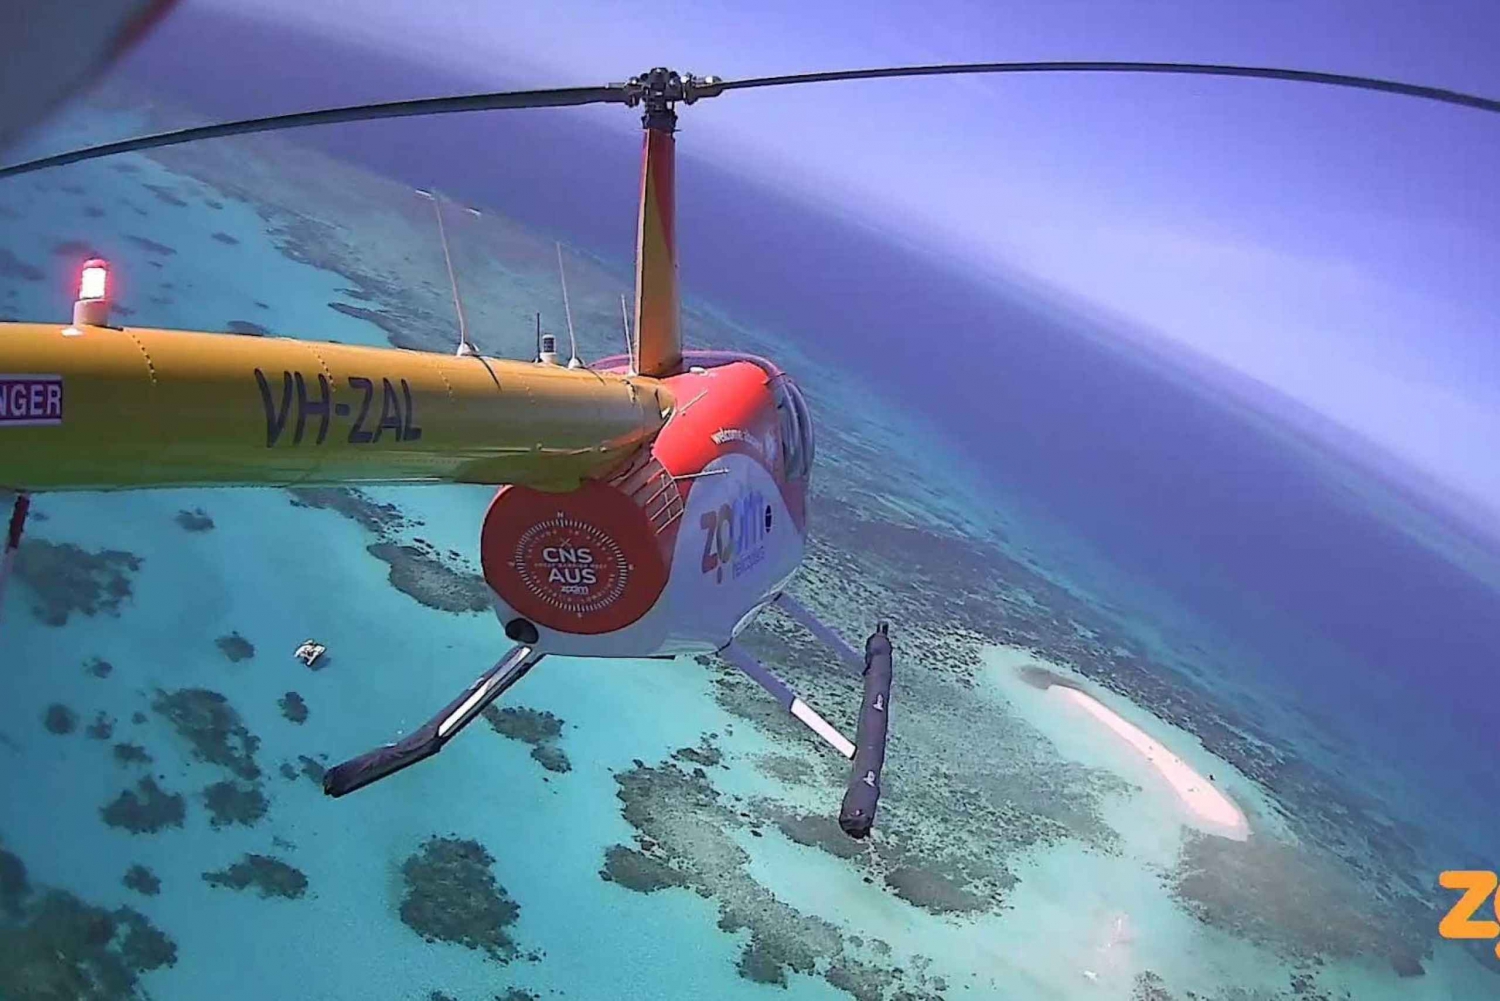 Lo spettacolare volo panoramico della barriera corallina della durata di 60 minuti